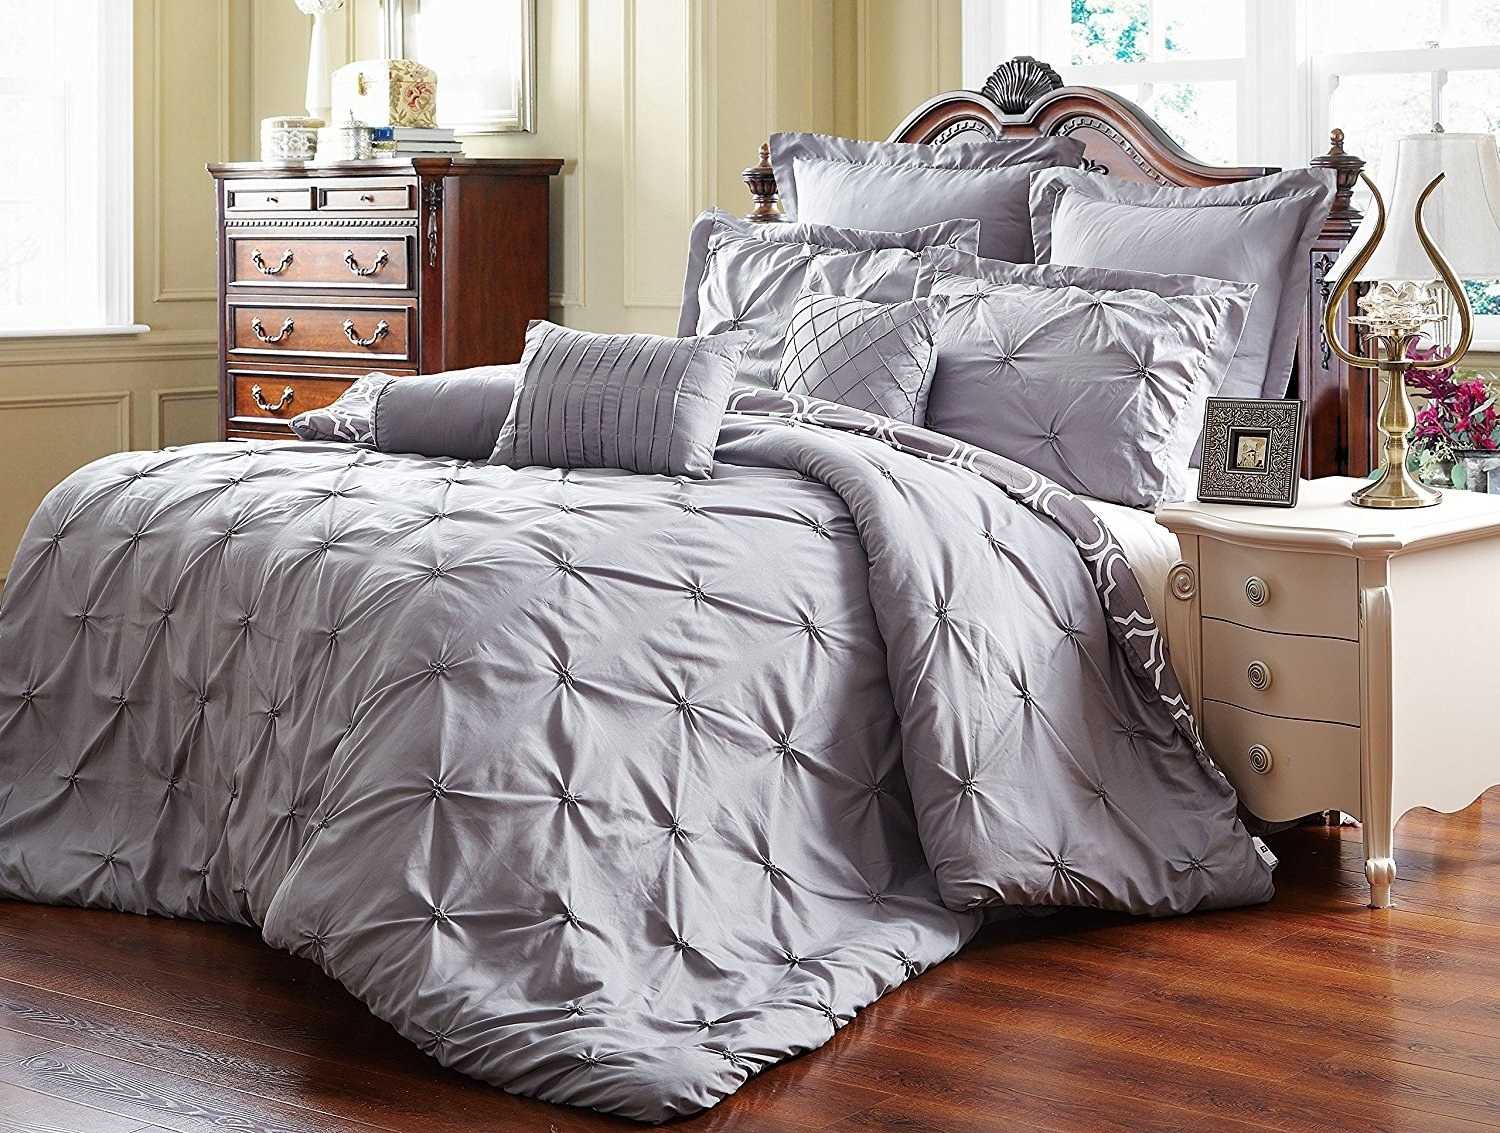 Постель постелька. Apollo Bedding одеяло. Apollo Bedding постельное белье. Красиво заправленная кровать. Покрывало на кровать.